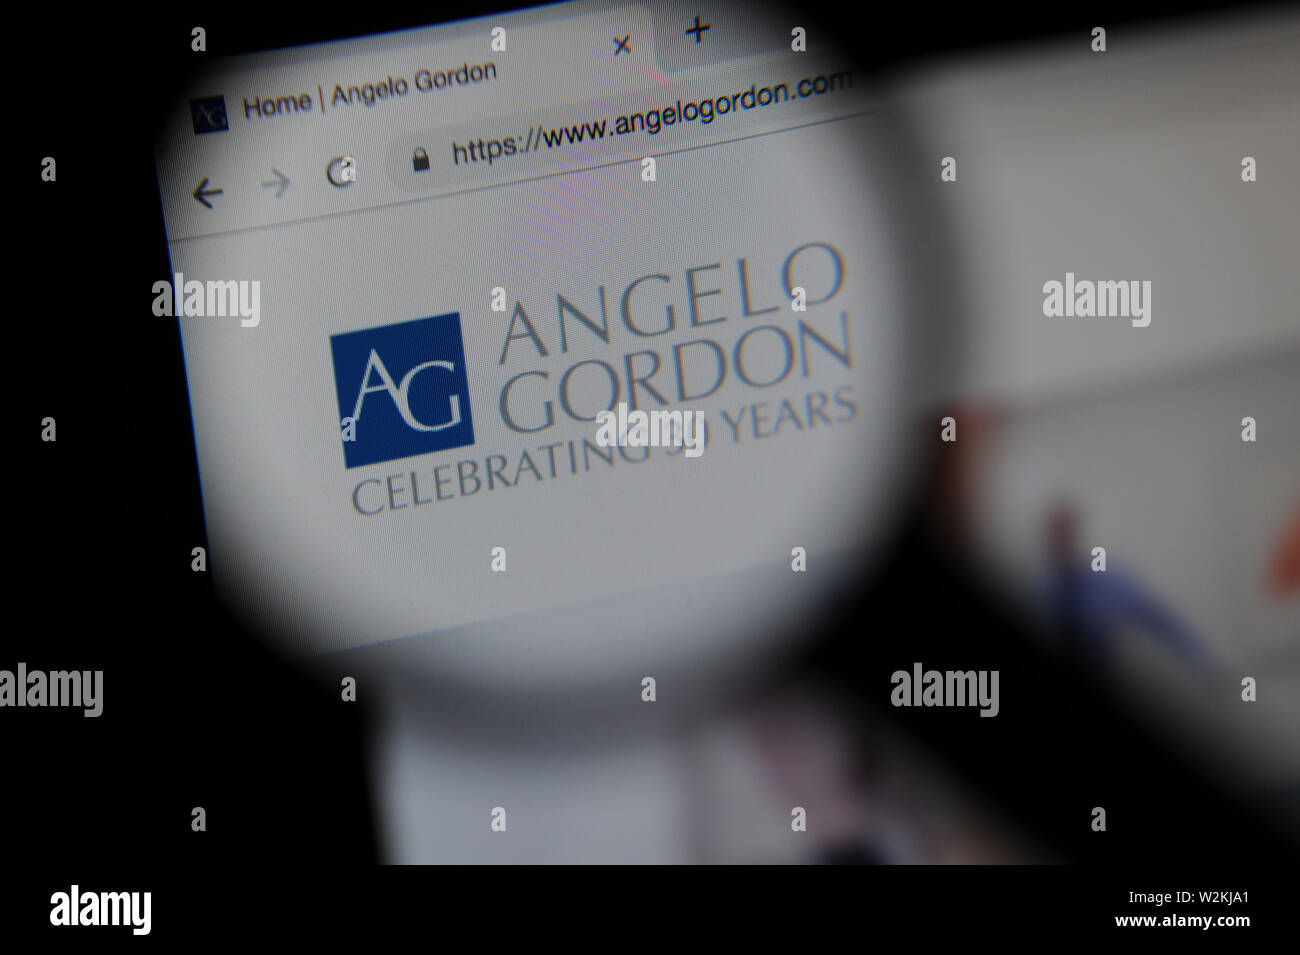 The Angelo Gordon financial website seen through a magnifying glass Stock Photo